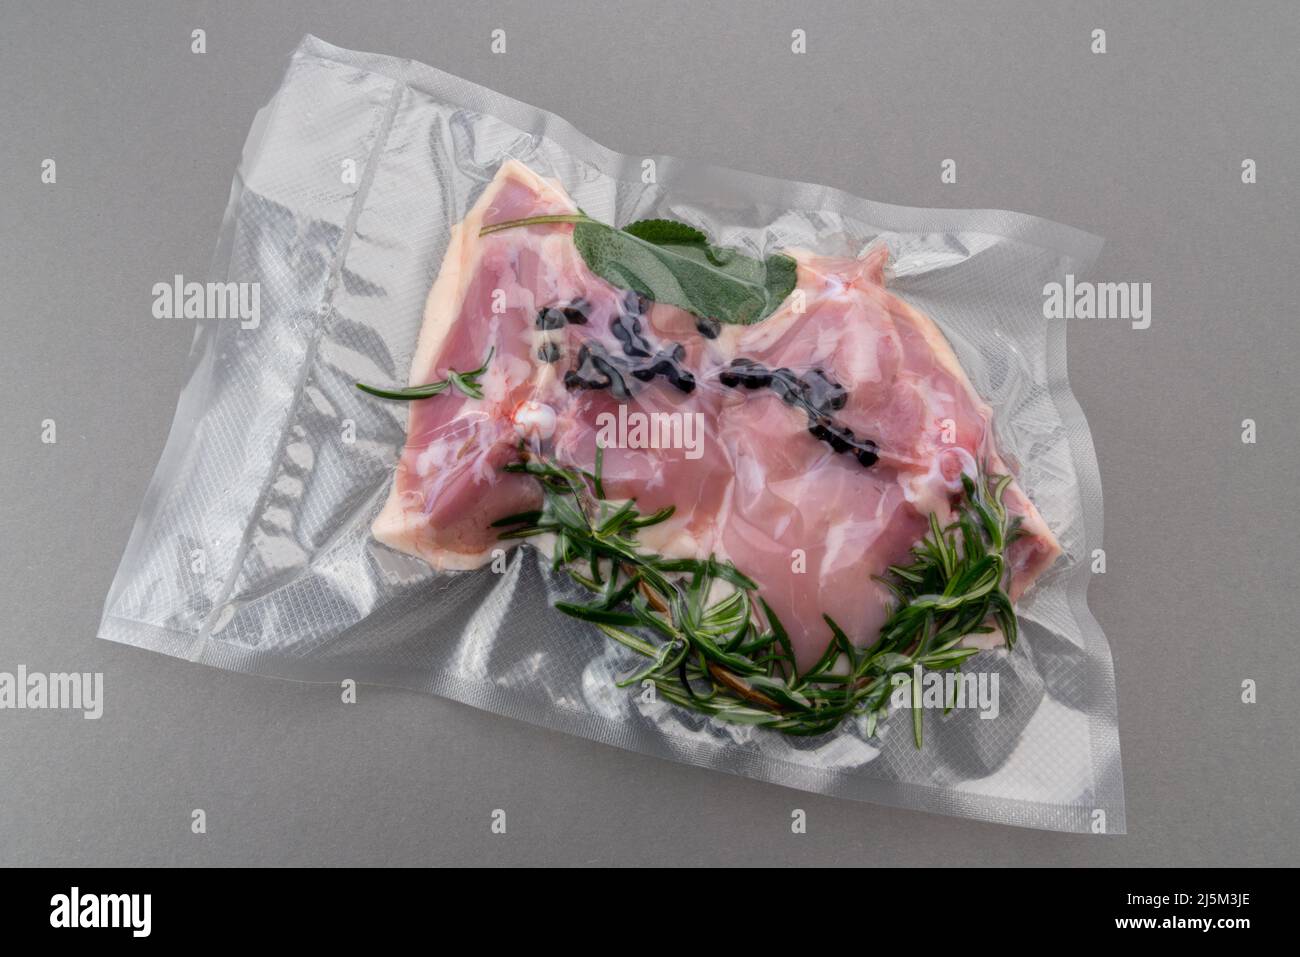 Hähnchenschenkel mit Rosmarin-Salbei und Gewürzen in vakuumverpackter Verpackung, abgedichtet für Sous-Vide-Kochen isoliert auf grauem Hintergrund in der Draufsicht Stockfoto